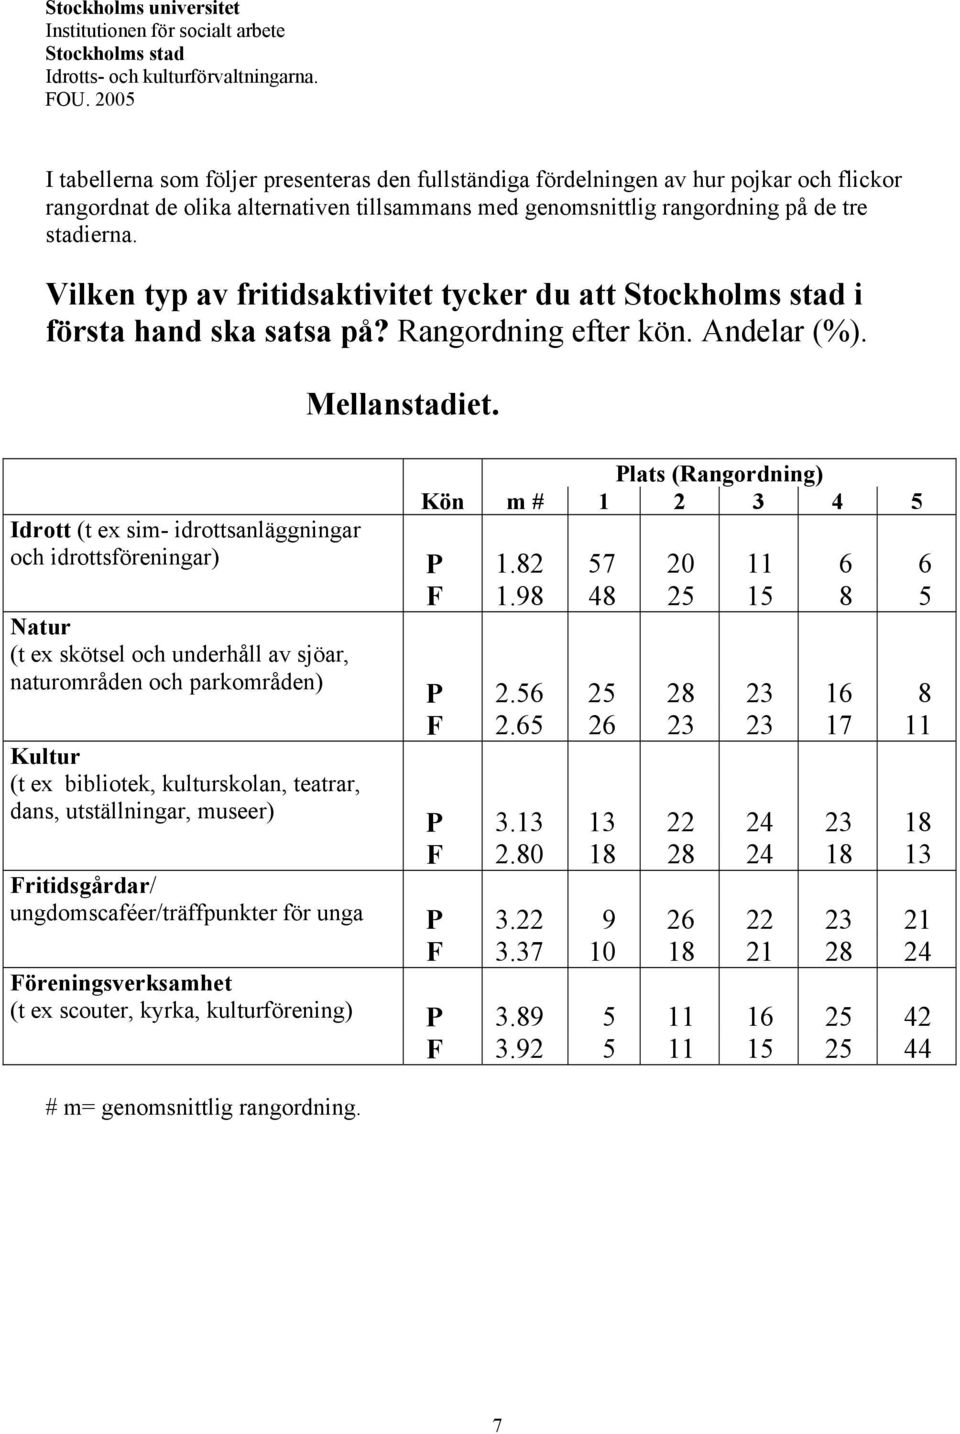 Vilken typ av fritidsaktivitet tycker du att Stockholms stad i första hand ska satsa på? Rangordning efter kön. Andelar (%). Mellanstadiet.